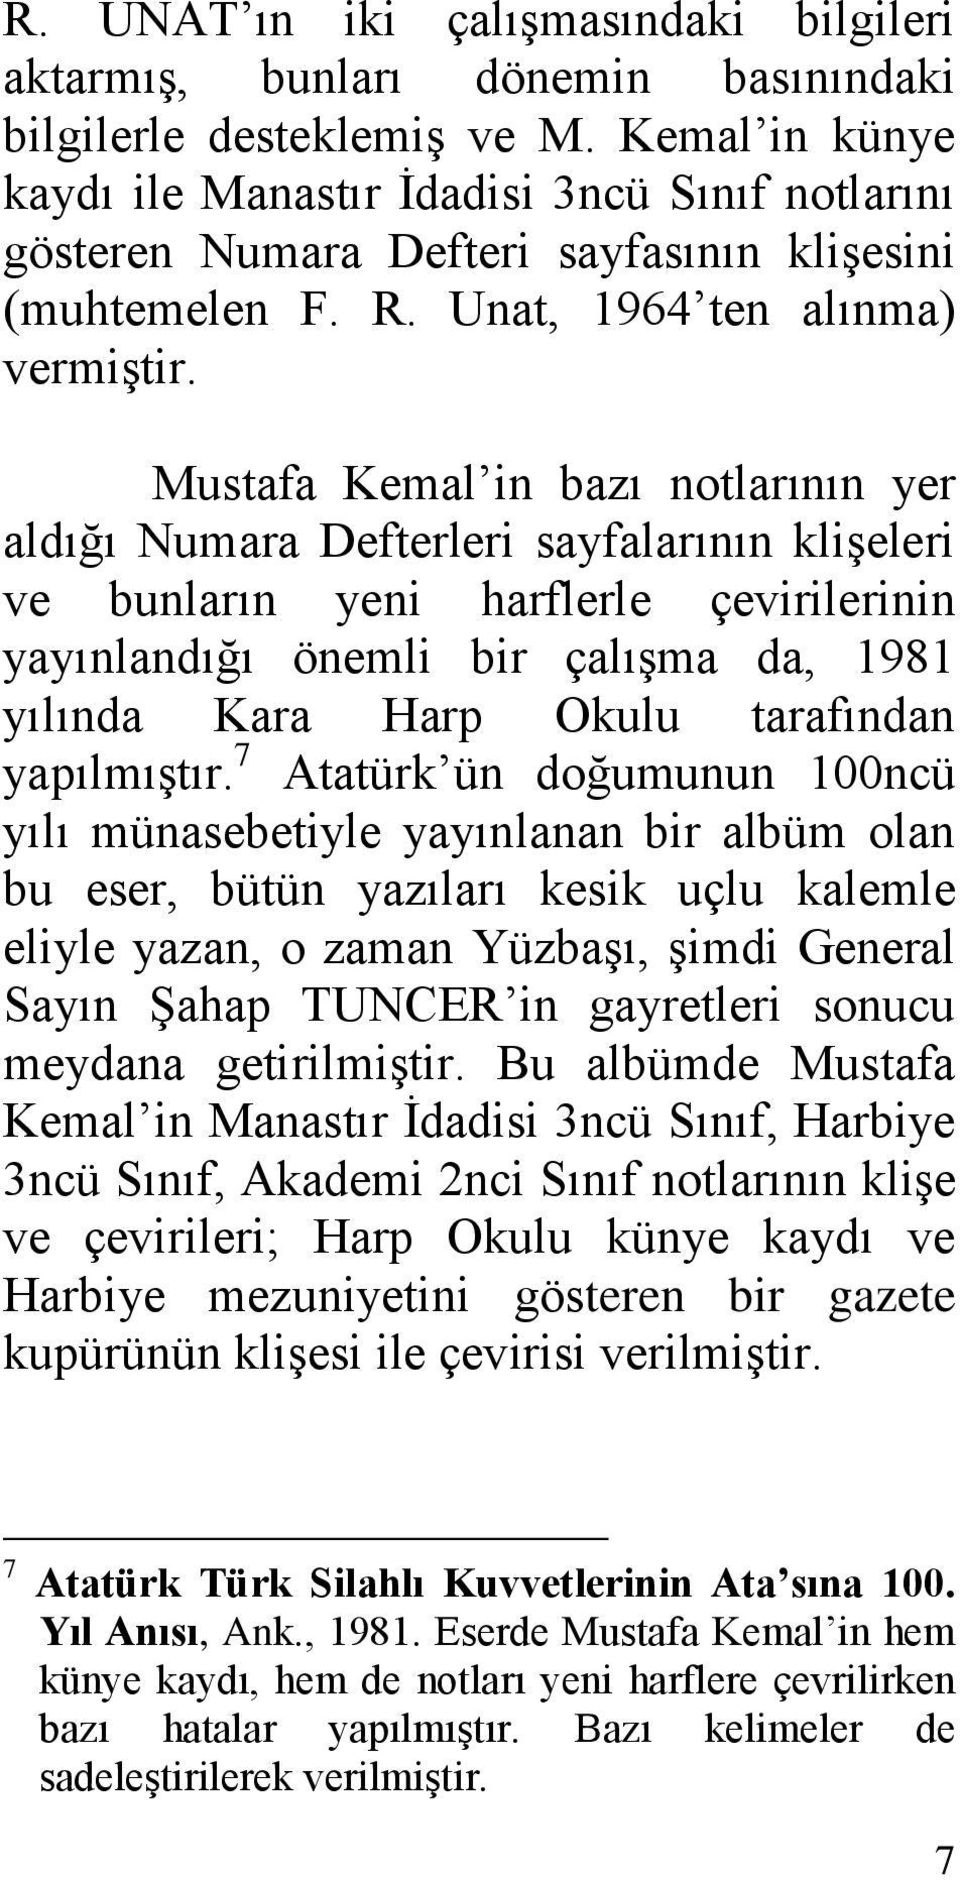 Mustafa Kemal in bazı notlarının yer aldığı Numara Defterleri sayfalarının kliģeleri ve bunların yeni harflerle çevirilerinin yayınlandığı önemli bir çalıģma da, 1981 yılında Kara Harp Okulu